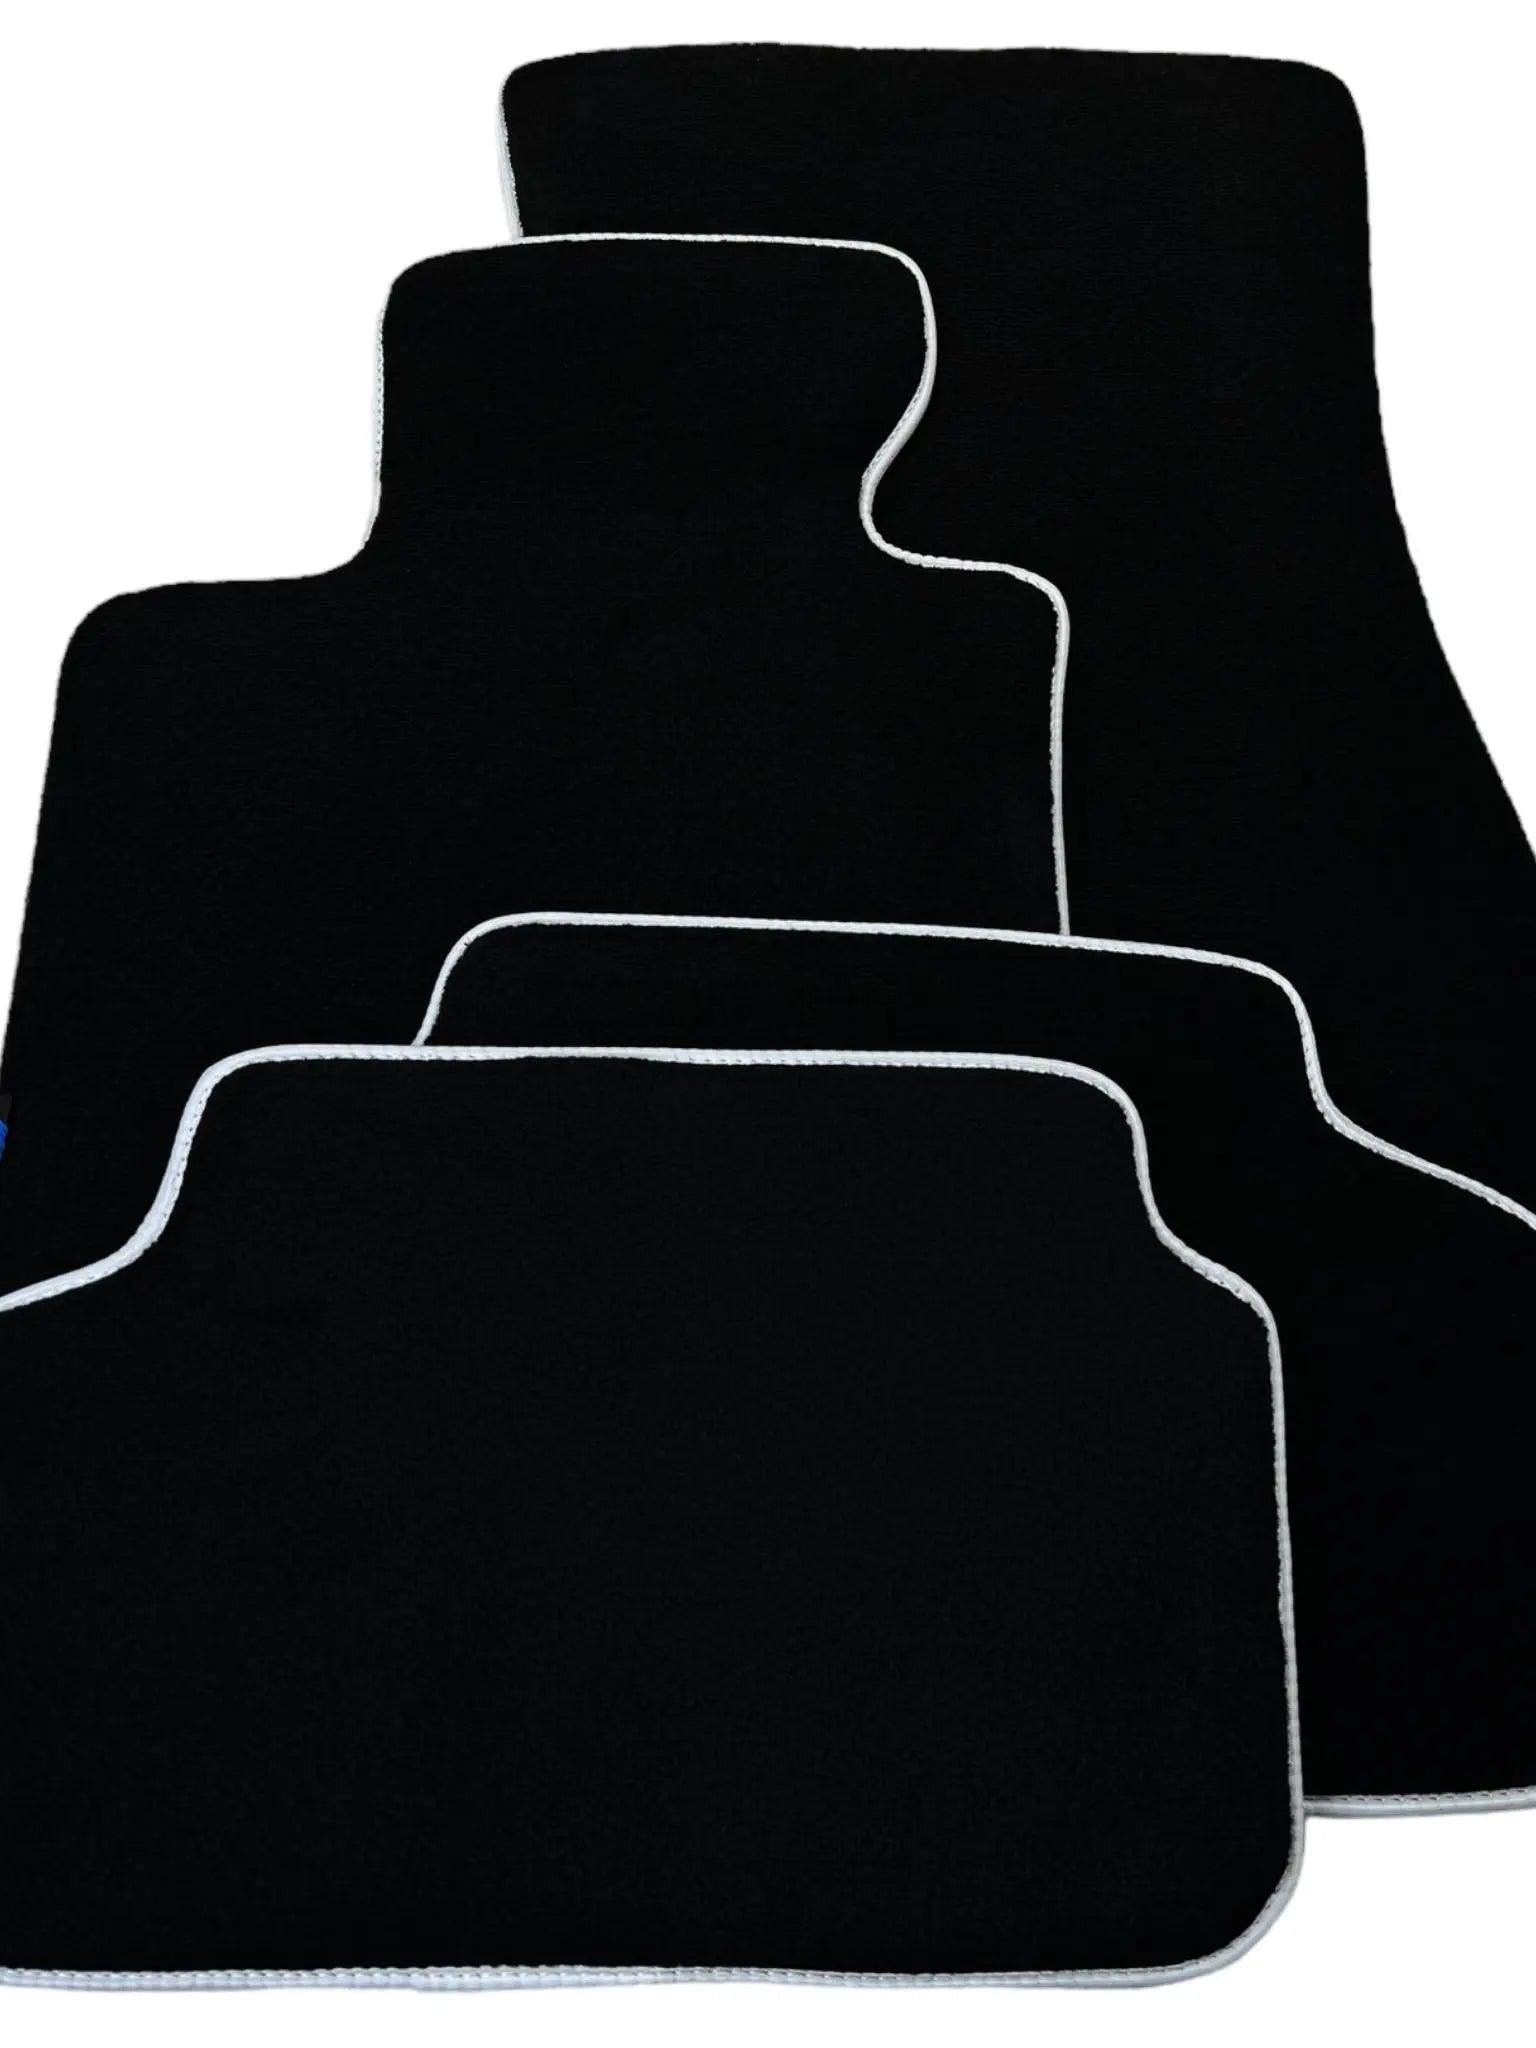 Black Floor Floor Mats For BMW X5 Series E70 | White Trim